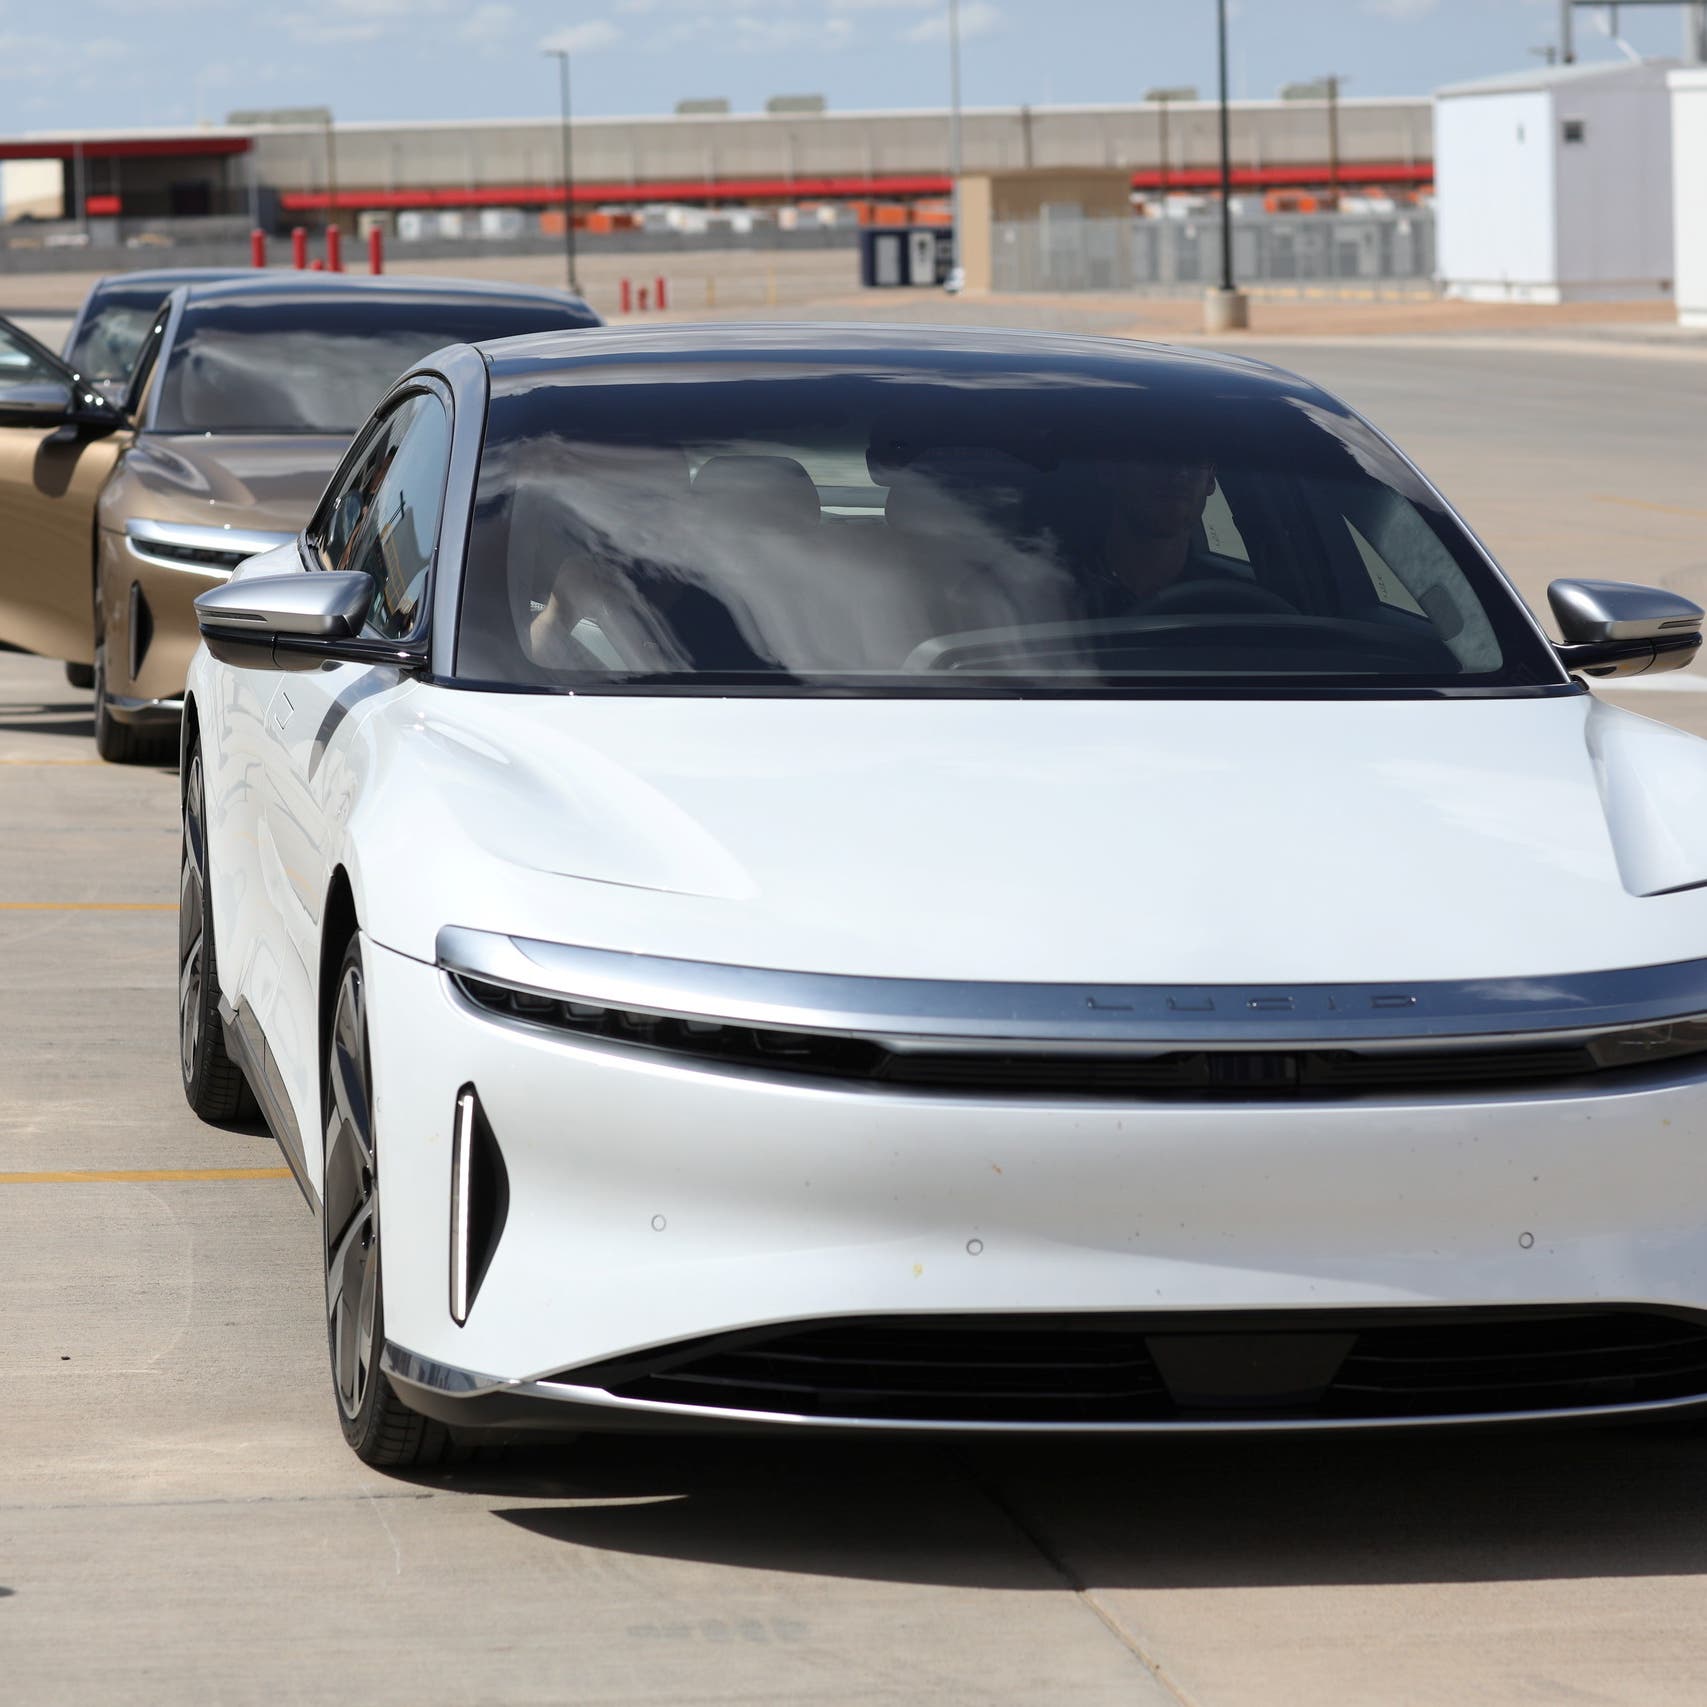 "لوسيد" تطلق أول سيارة كهربائية من مصنعها في السعودية سبتمبر المقبل